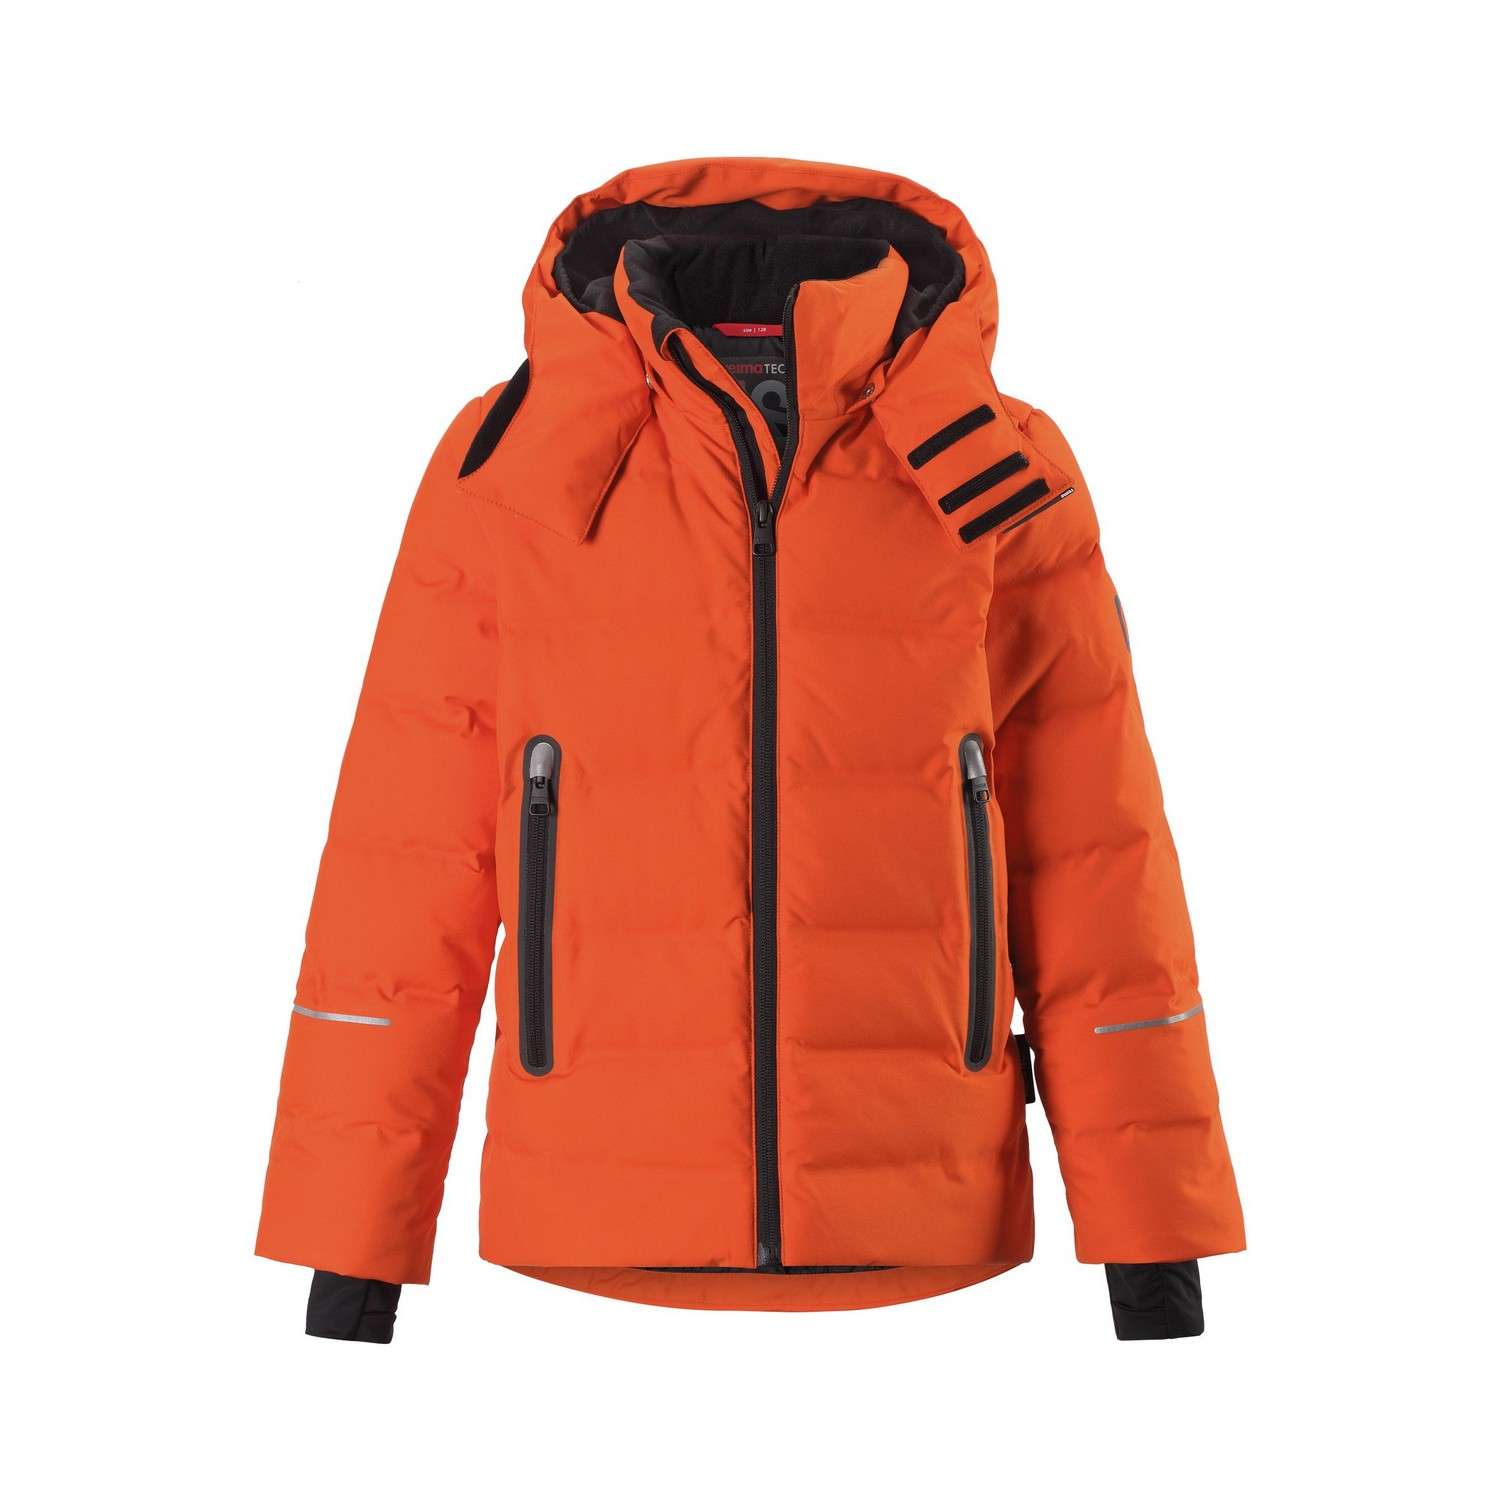 Рейма одна снежинка. Куртка пуховая Reima wakeup. Рейма горнолыжная куртка детская оранжевая. Reima oy куртка. 531427 9990 Reima.